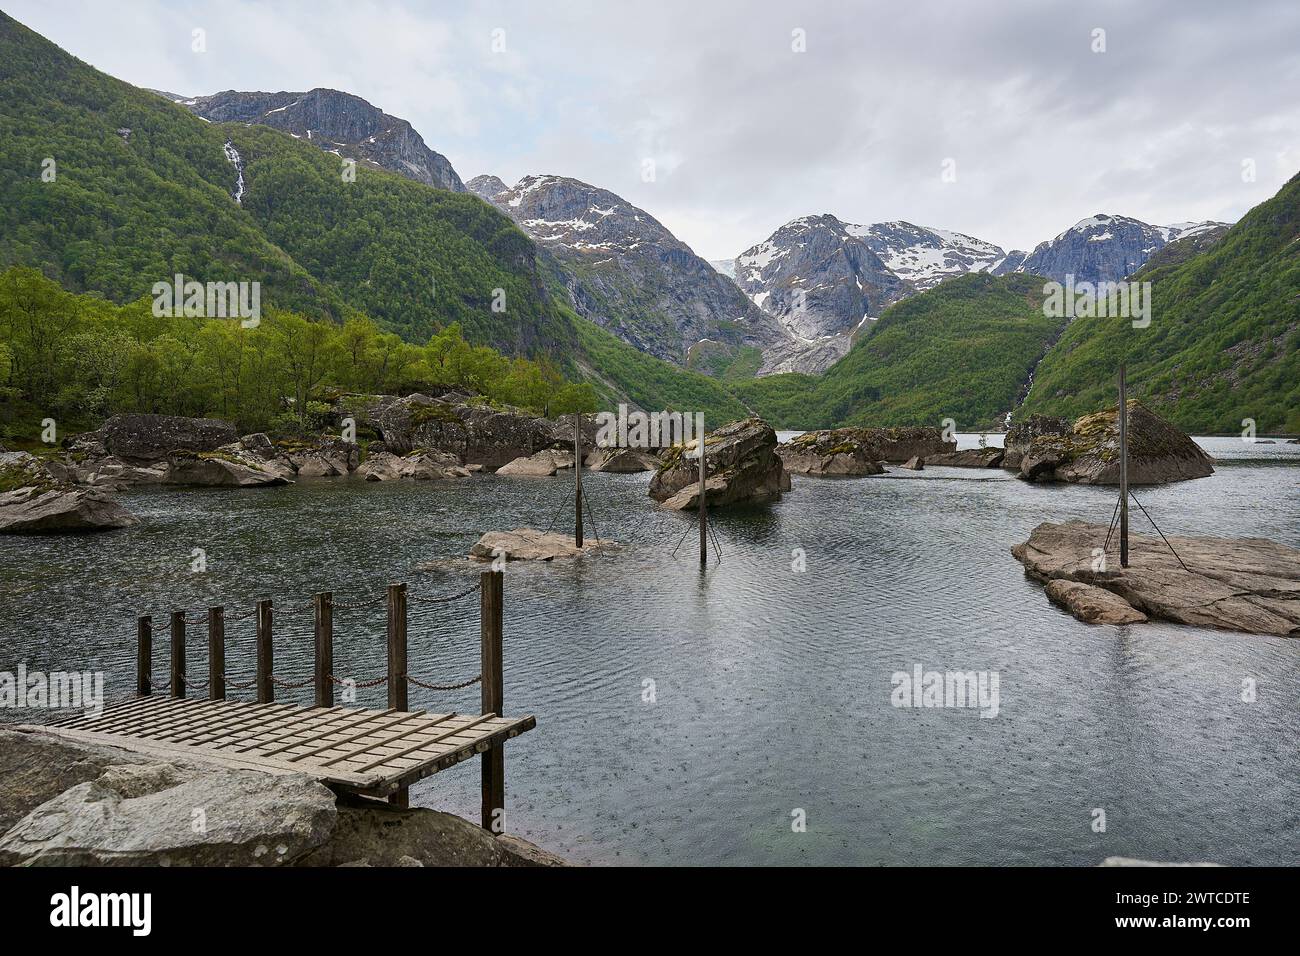 Magnifique lac de montagne Bondhus Vatnet au pied d'un glacier bleu dans les hautes terres de Norvège, destination de voyage populaire pour les amoureux de la nature et de la randonnée Banque D'Images